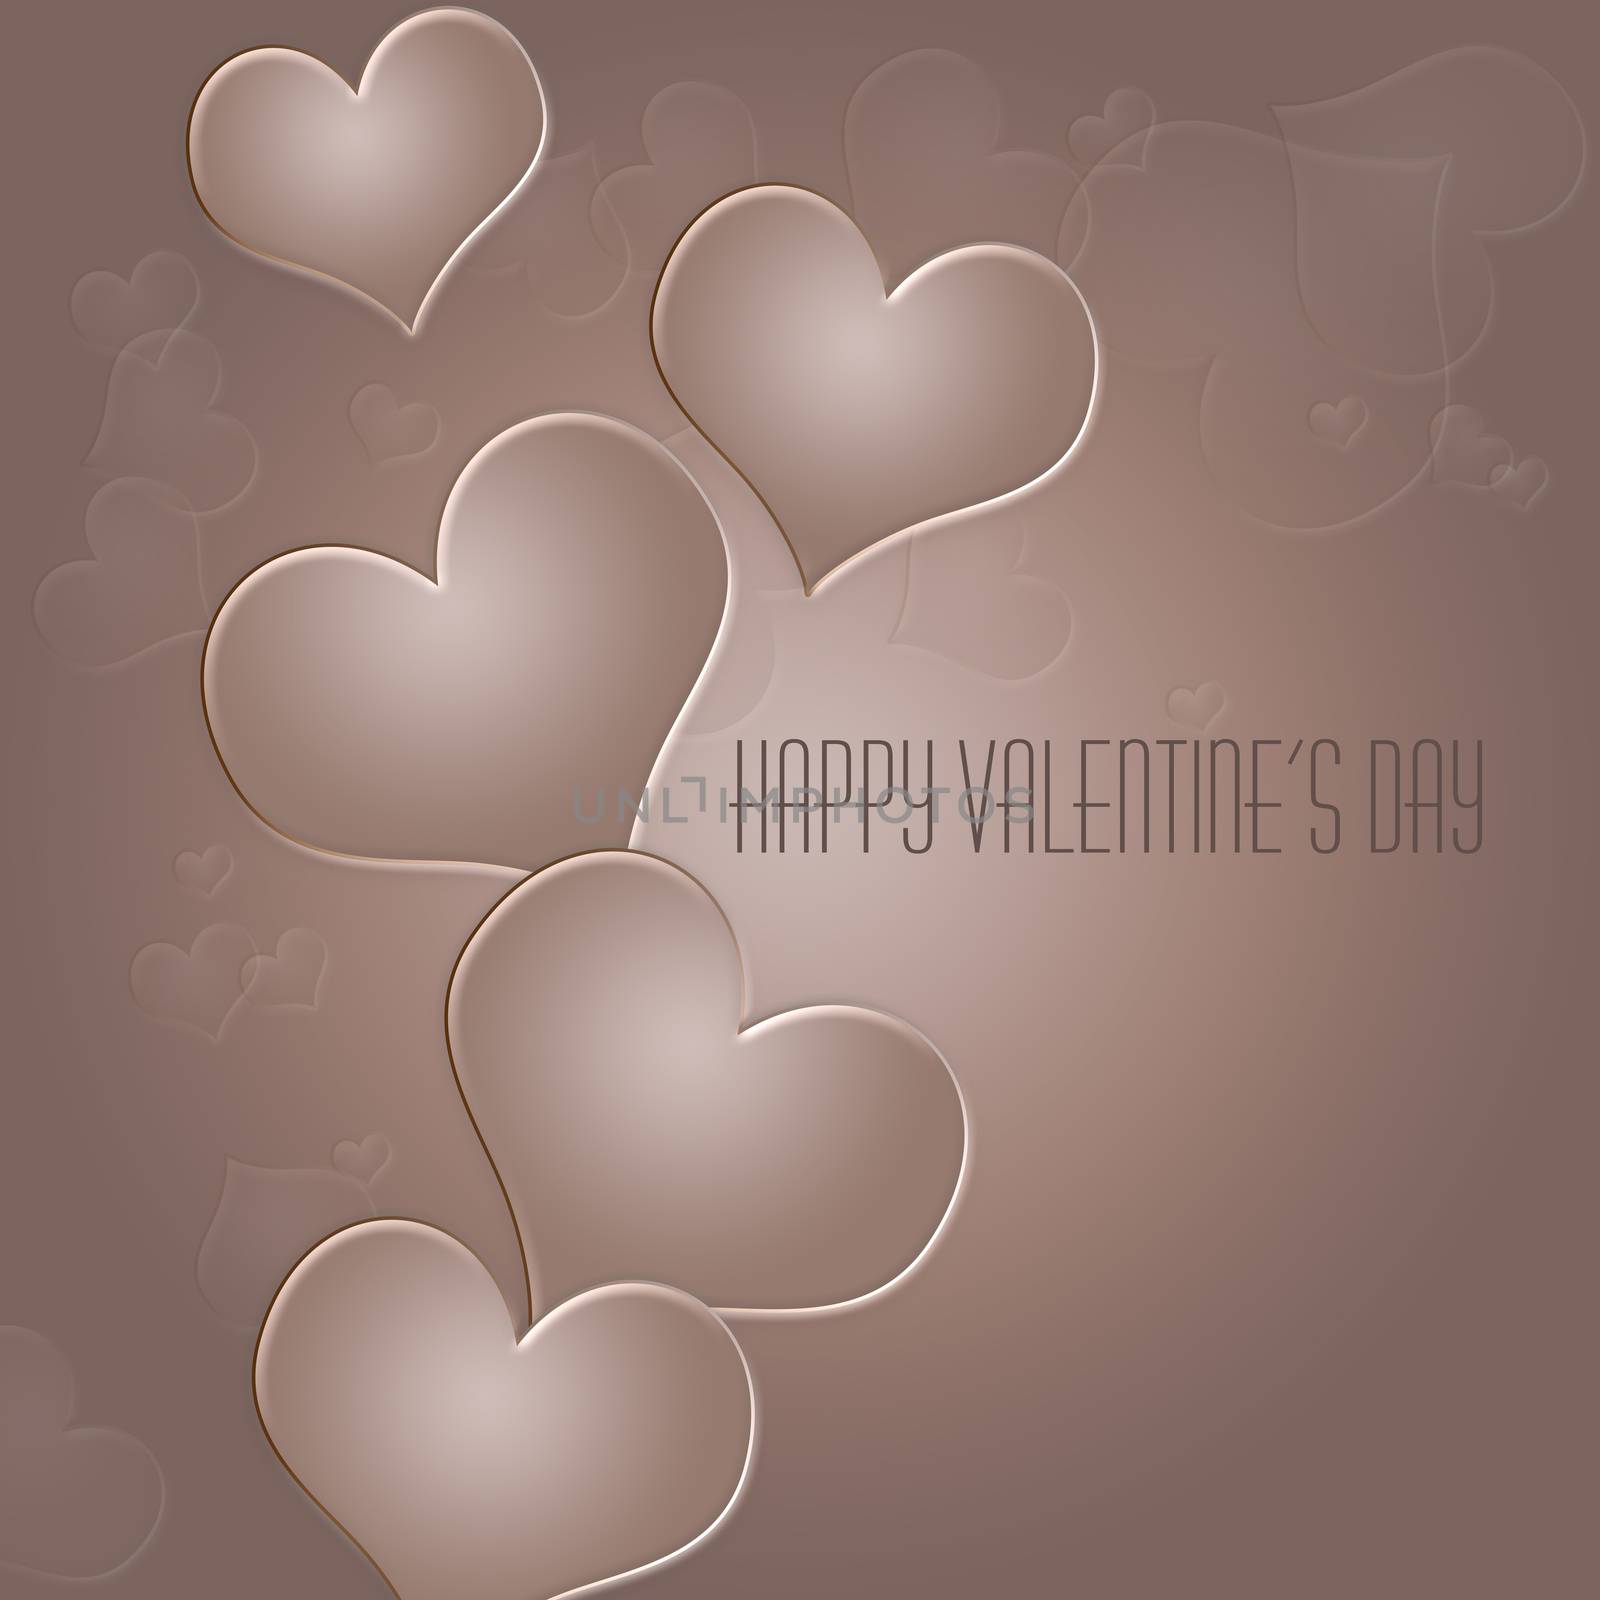 Happy Valentine's Day by tharun15